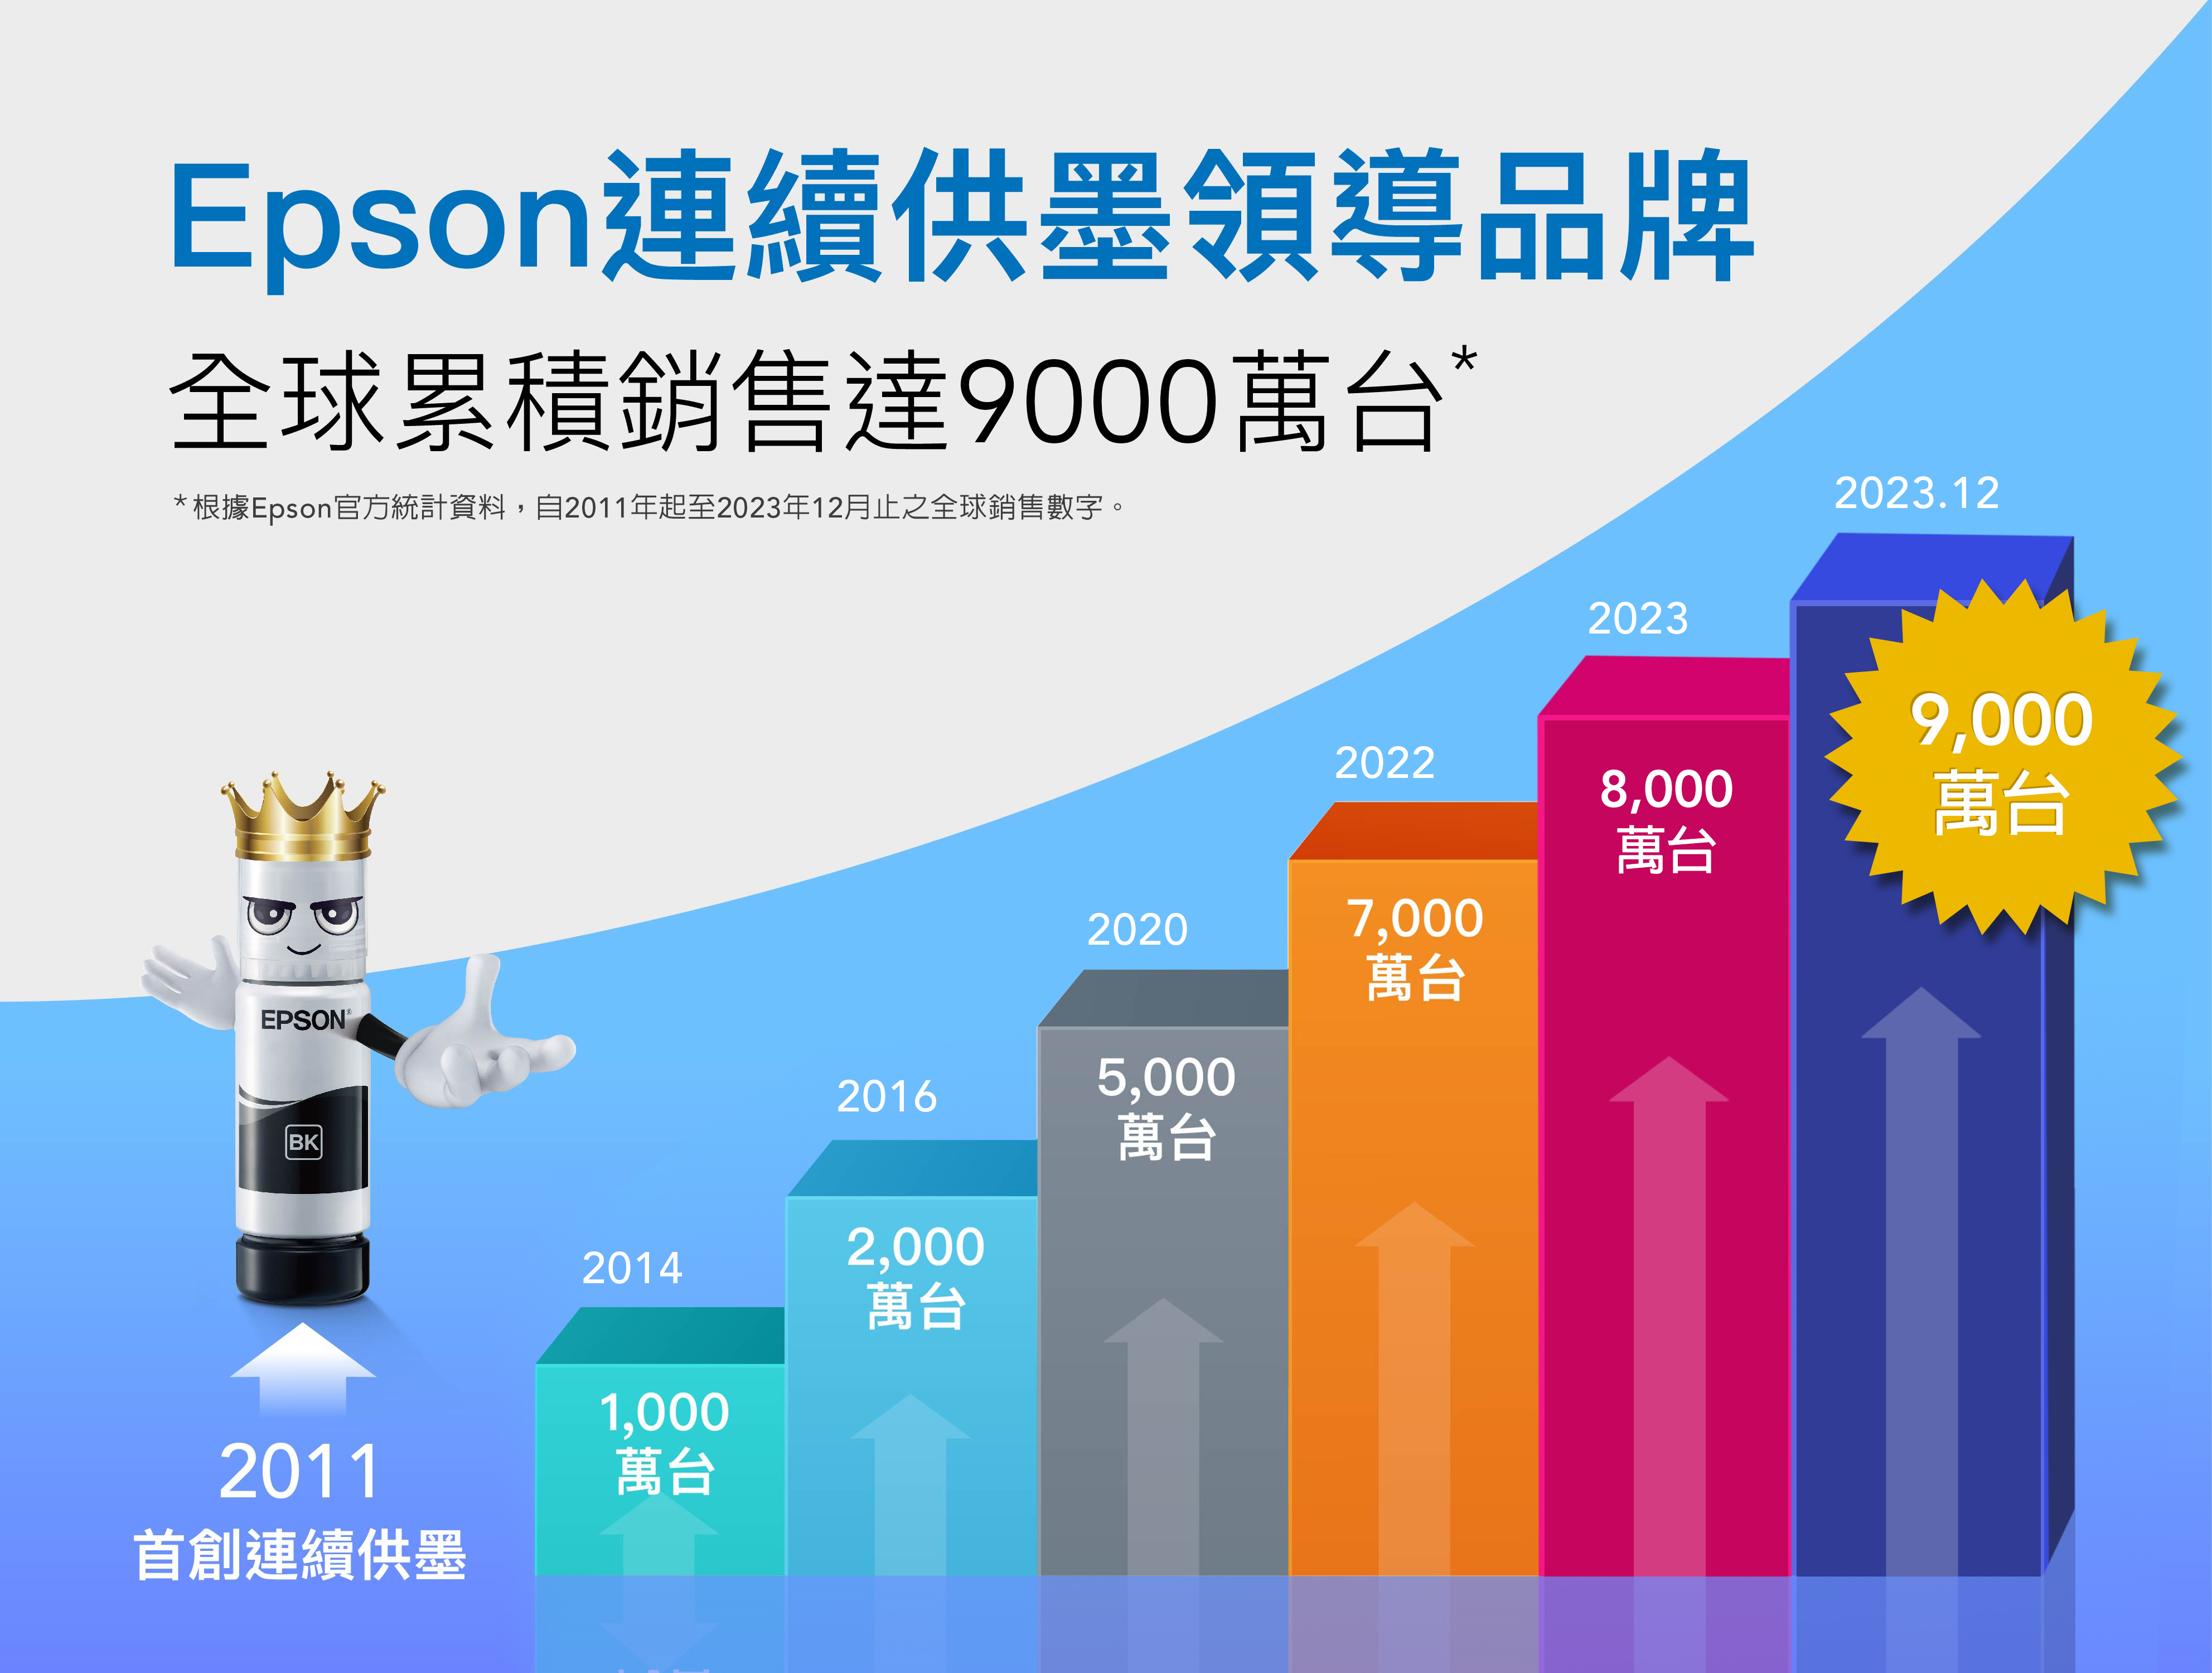 Epson連續供墨領導品牌全球累積銷售達9000萬台*根據Epson官方統計資料,自2011年起至2023年12月止之全球銷售數字。EPSON BK20162011首創連續供墨20141,000萬台2,000萬台20222023.1220238,0009,000萬台萬台20207,000萬台5,000萬台